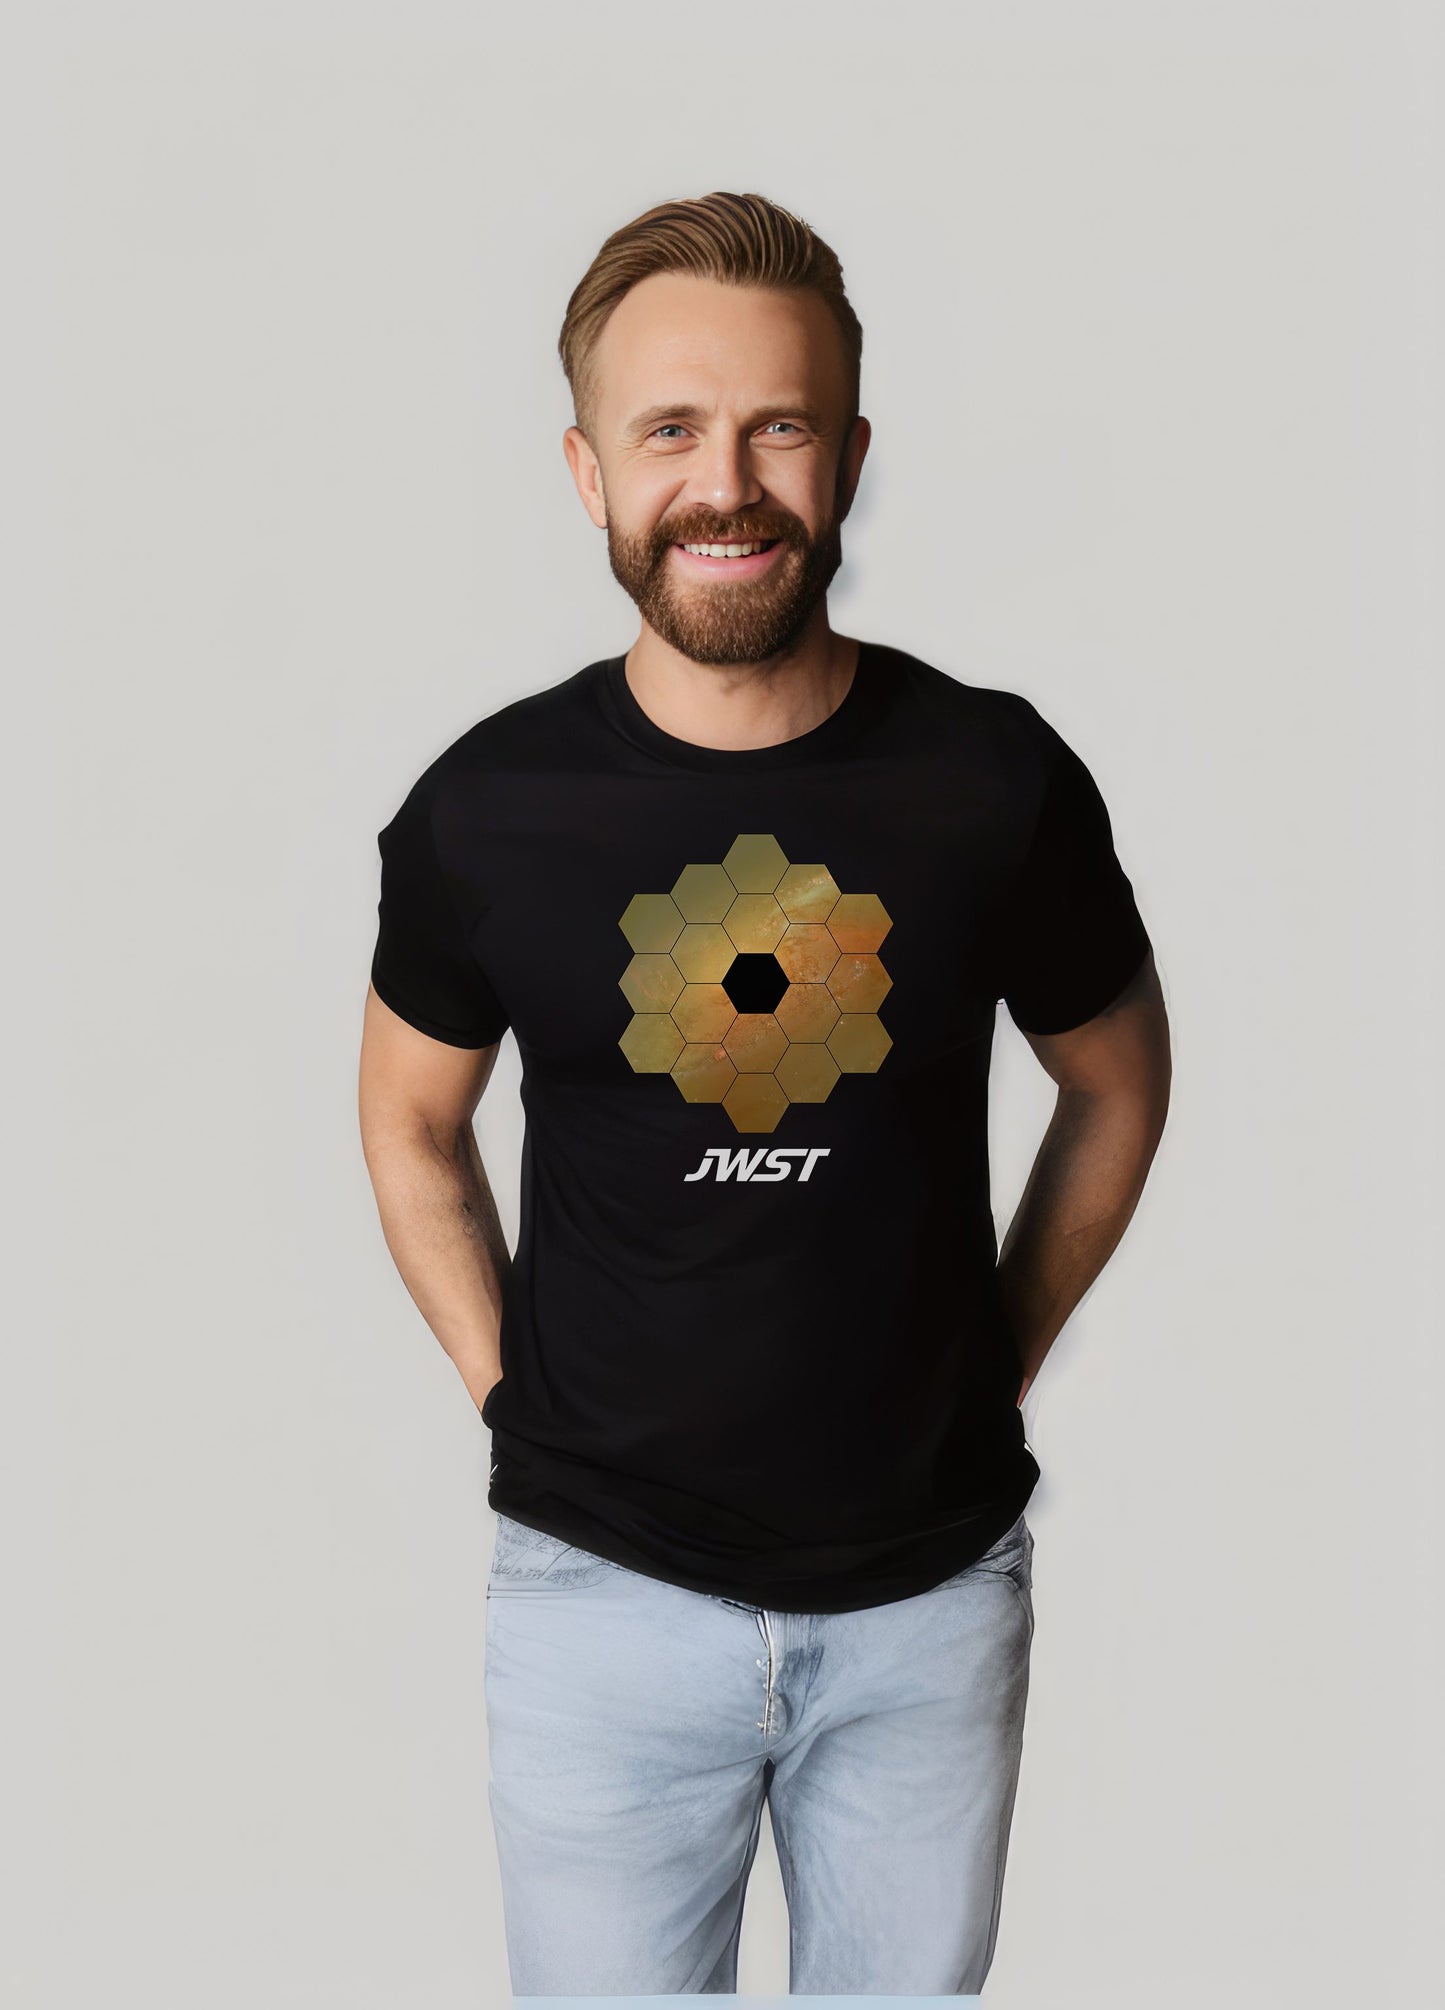 T-shirt unisexe du télescope spatial James Webb (conception de réflexions)